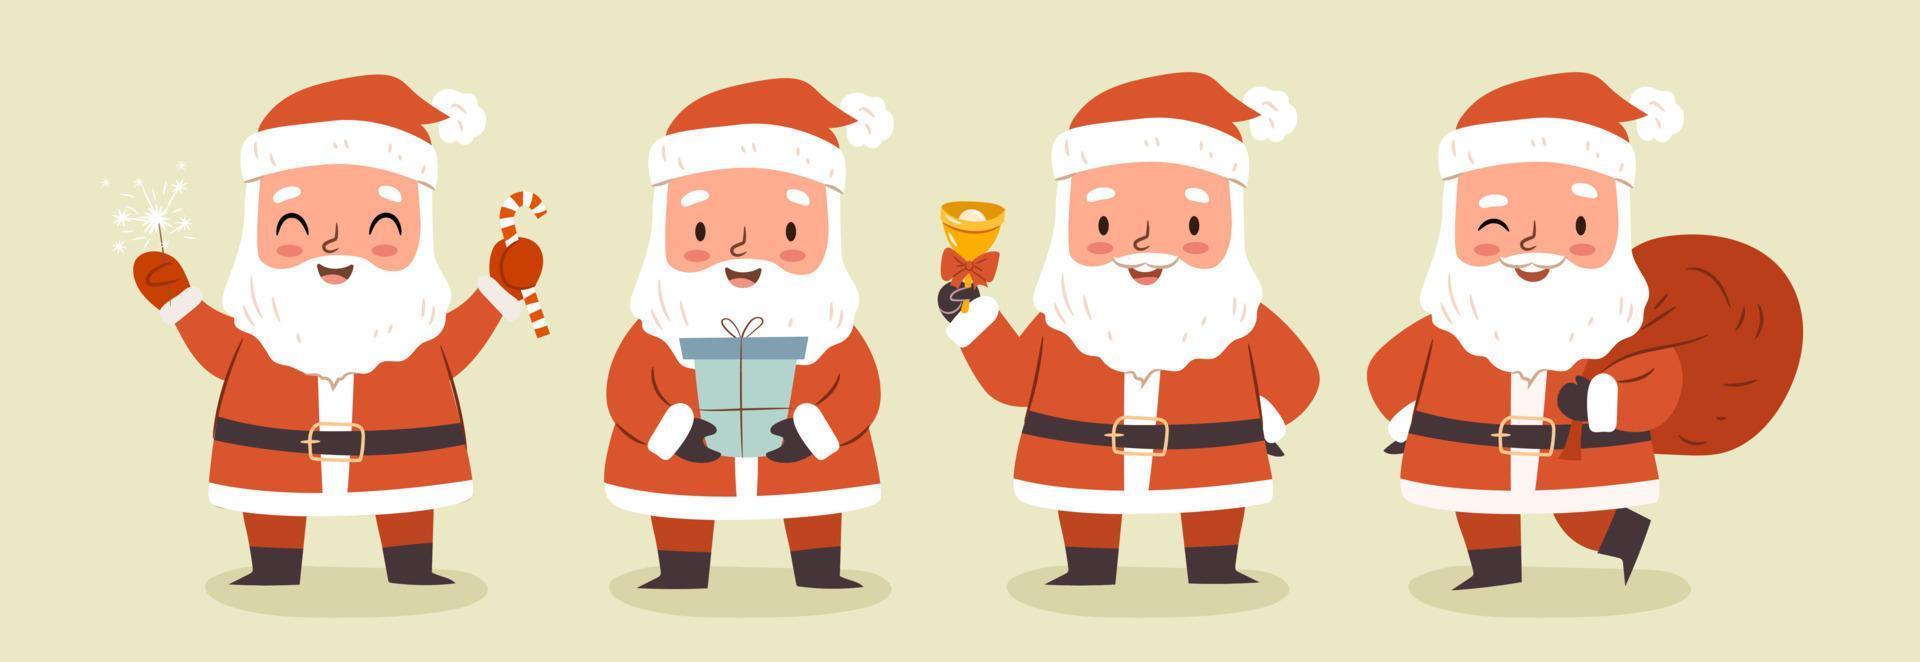 conjunto de caracteres de papai noel. Papai Noel em várias poses, isoladas no fundo em branco. ilustração em vetor bonito dos desenhos animados